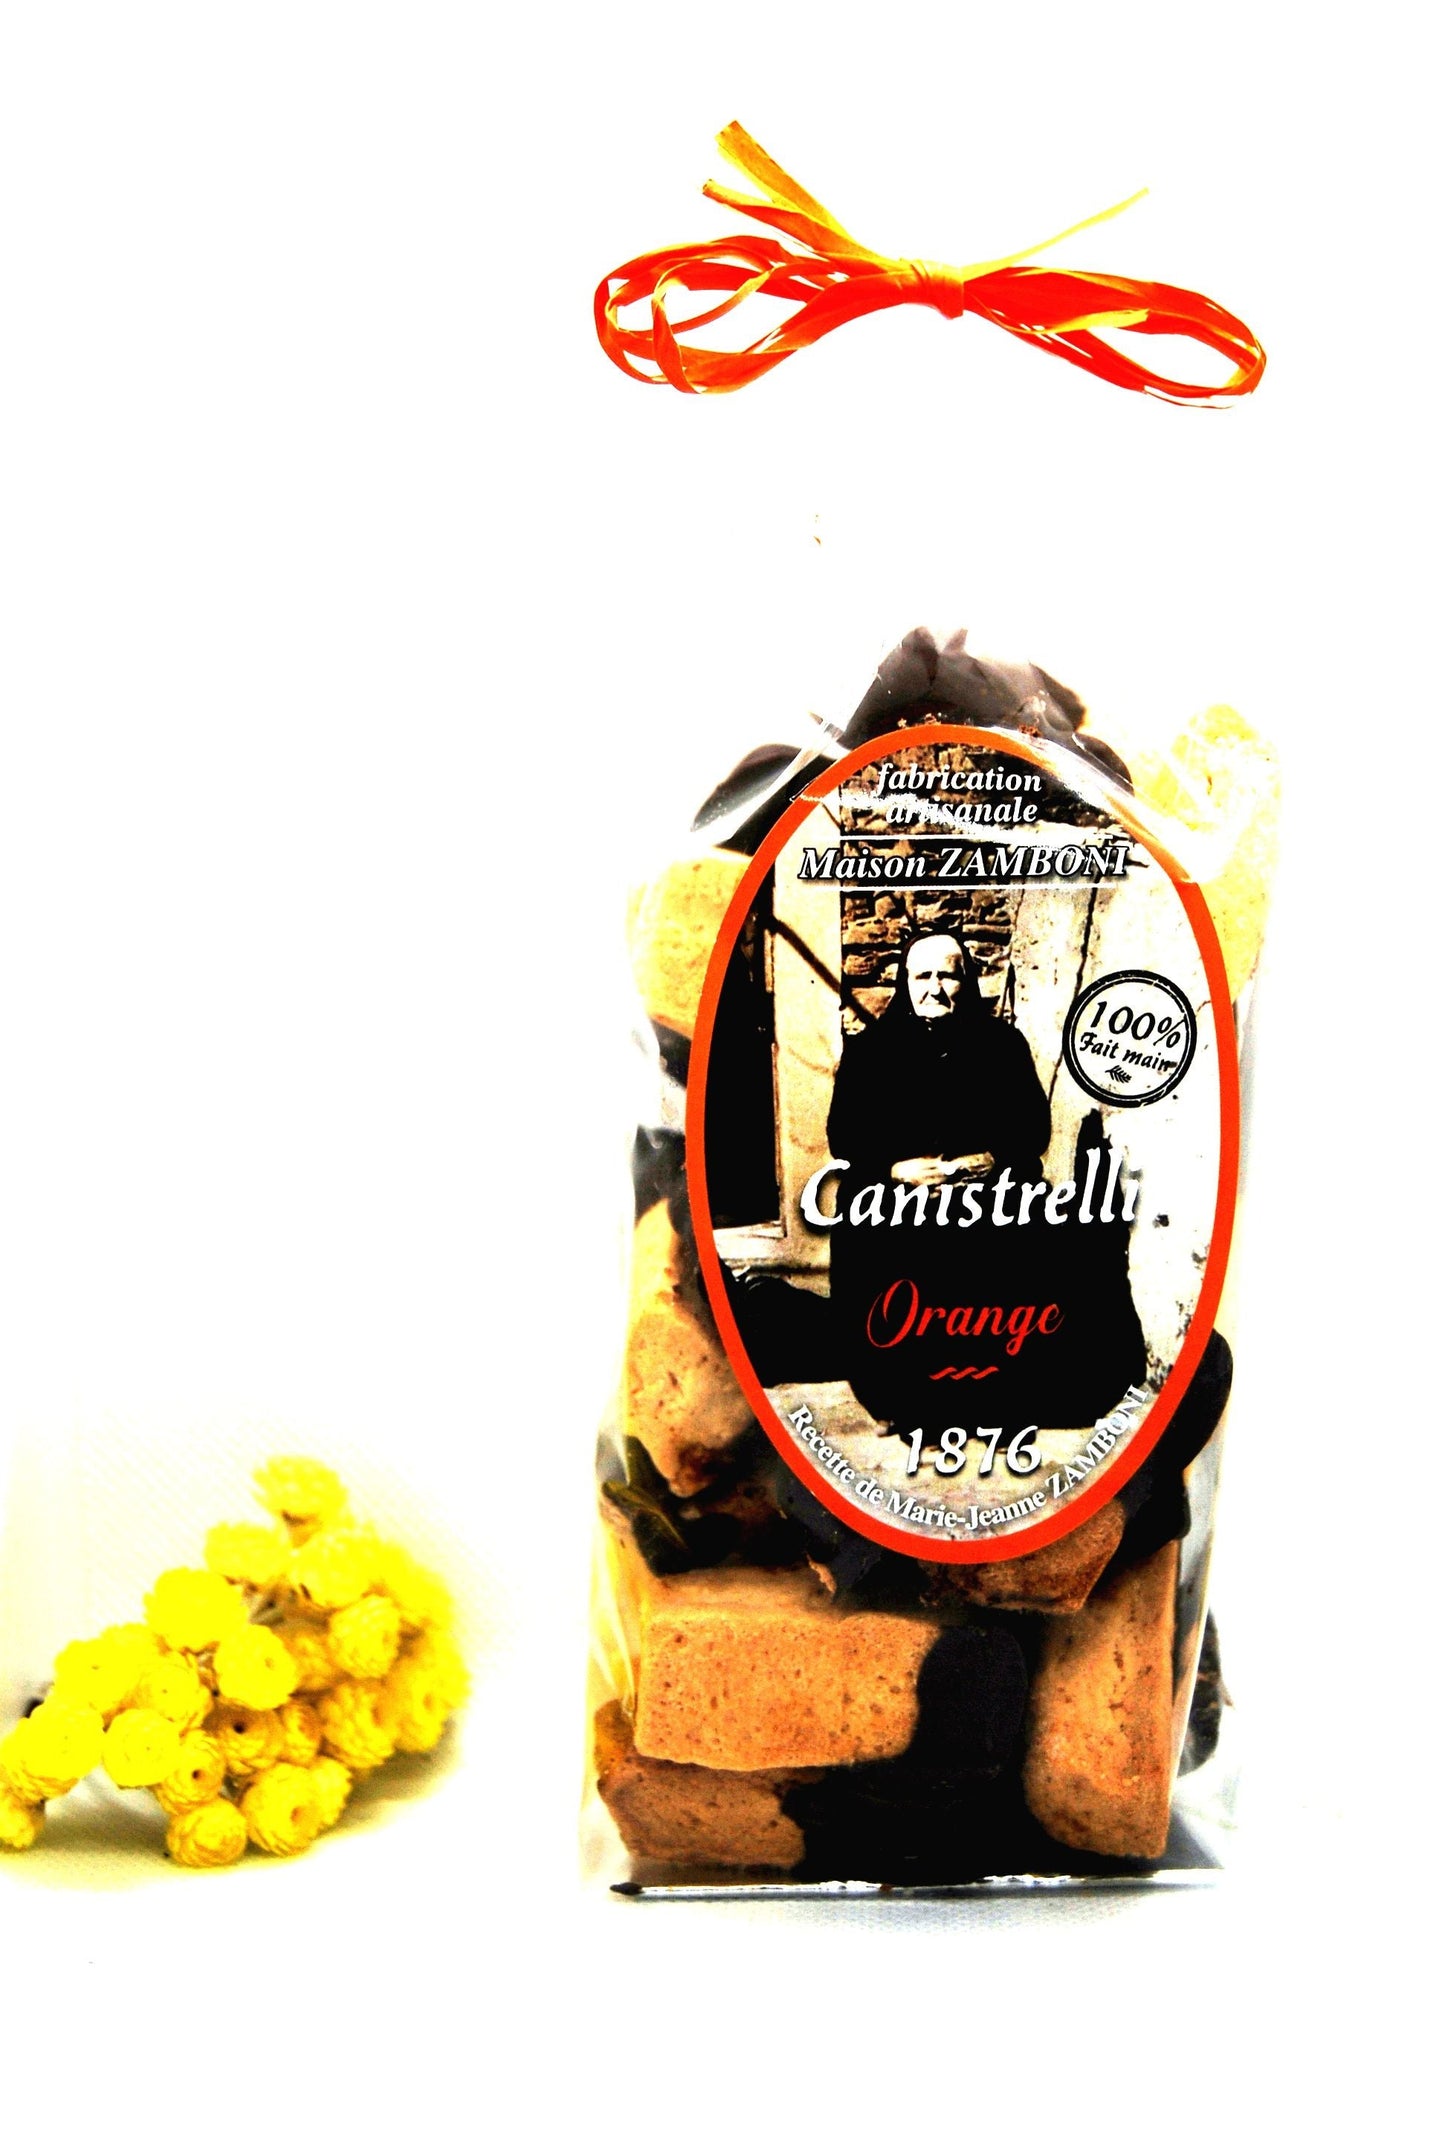 Canistrelli - Orange et Chocolat - Maison Zamboni